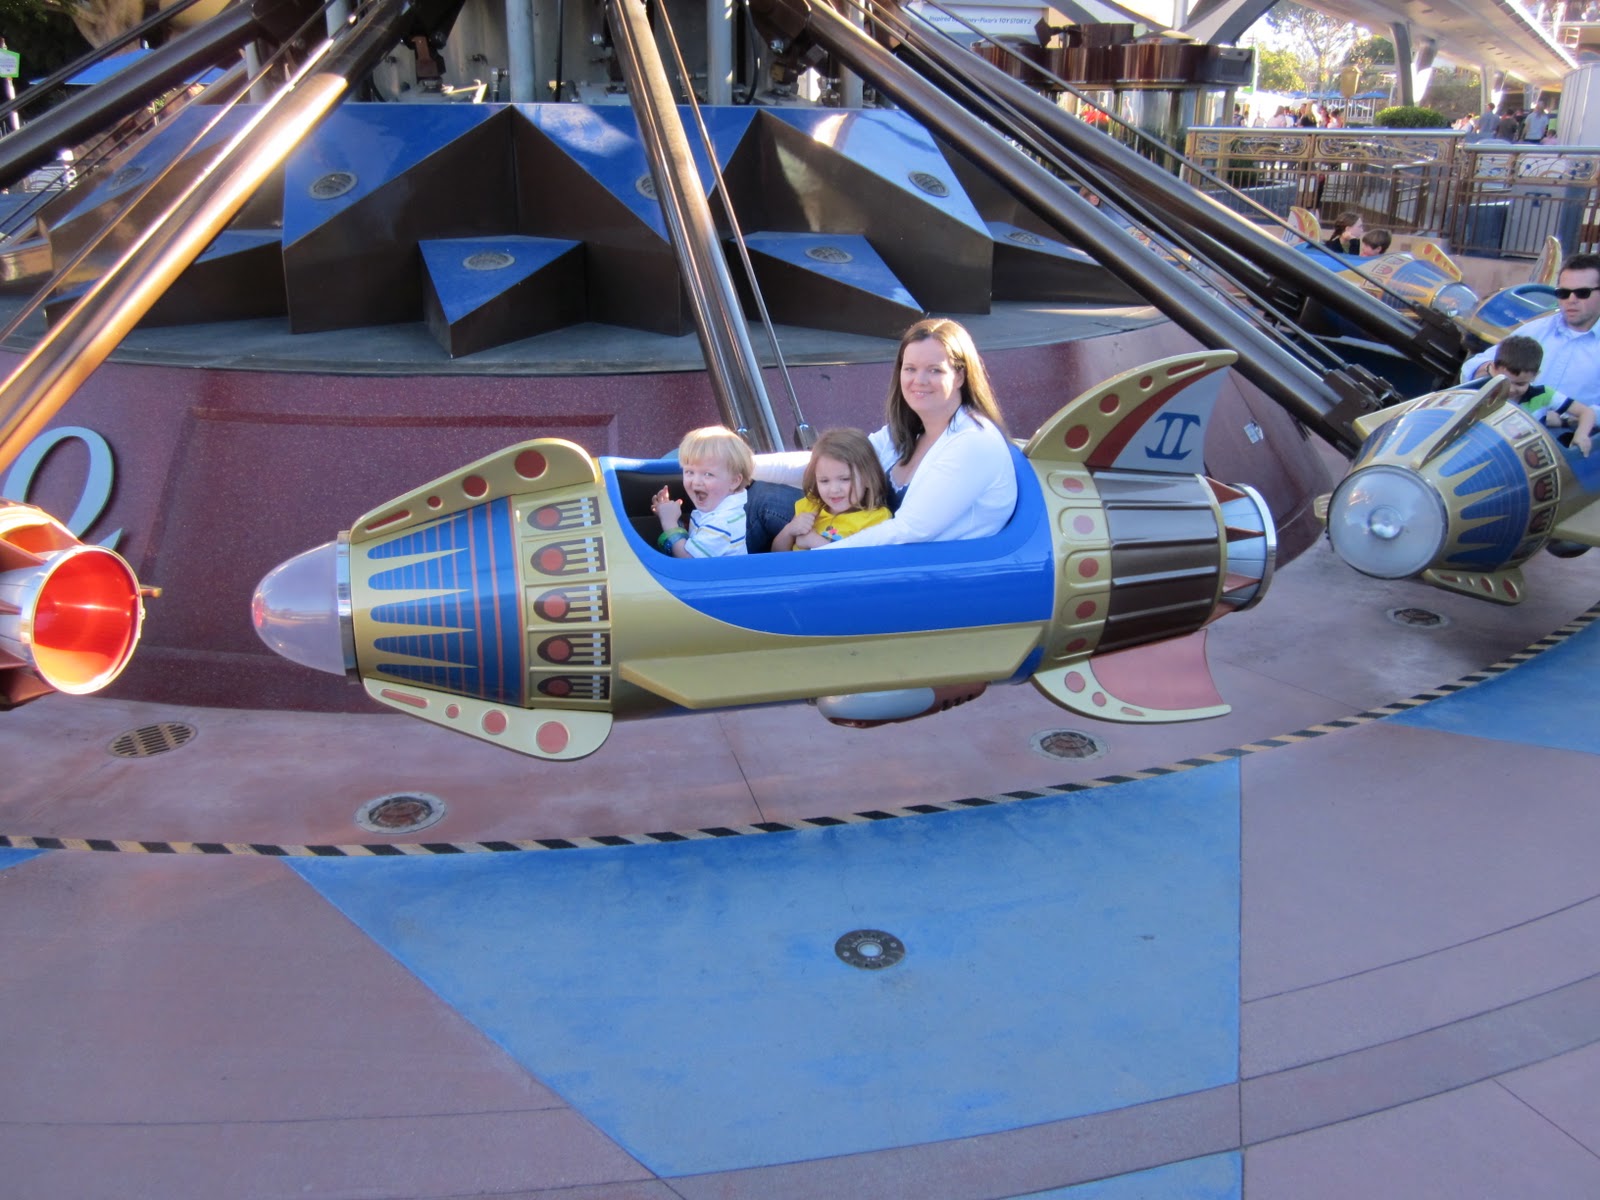 Enjoying Life With 4 Kids: Disneyland- Day 3, Rides